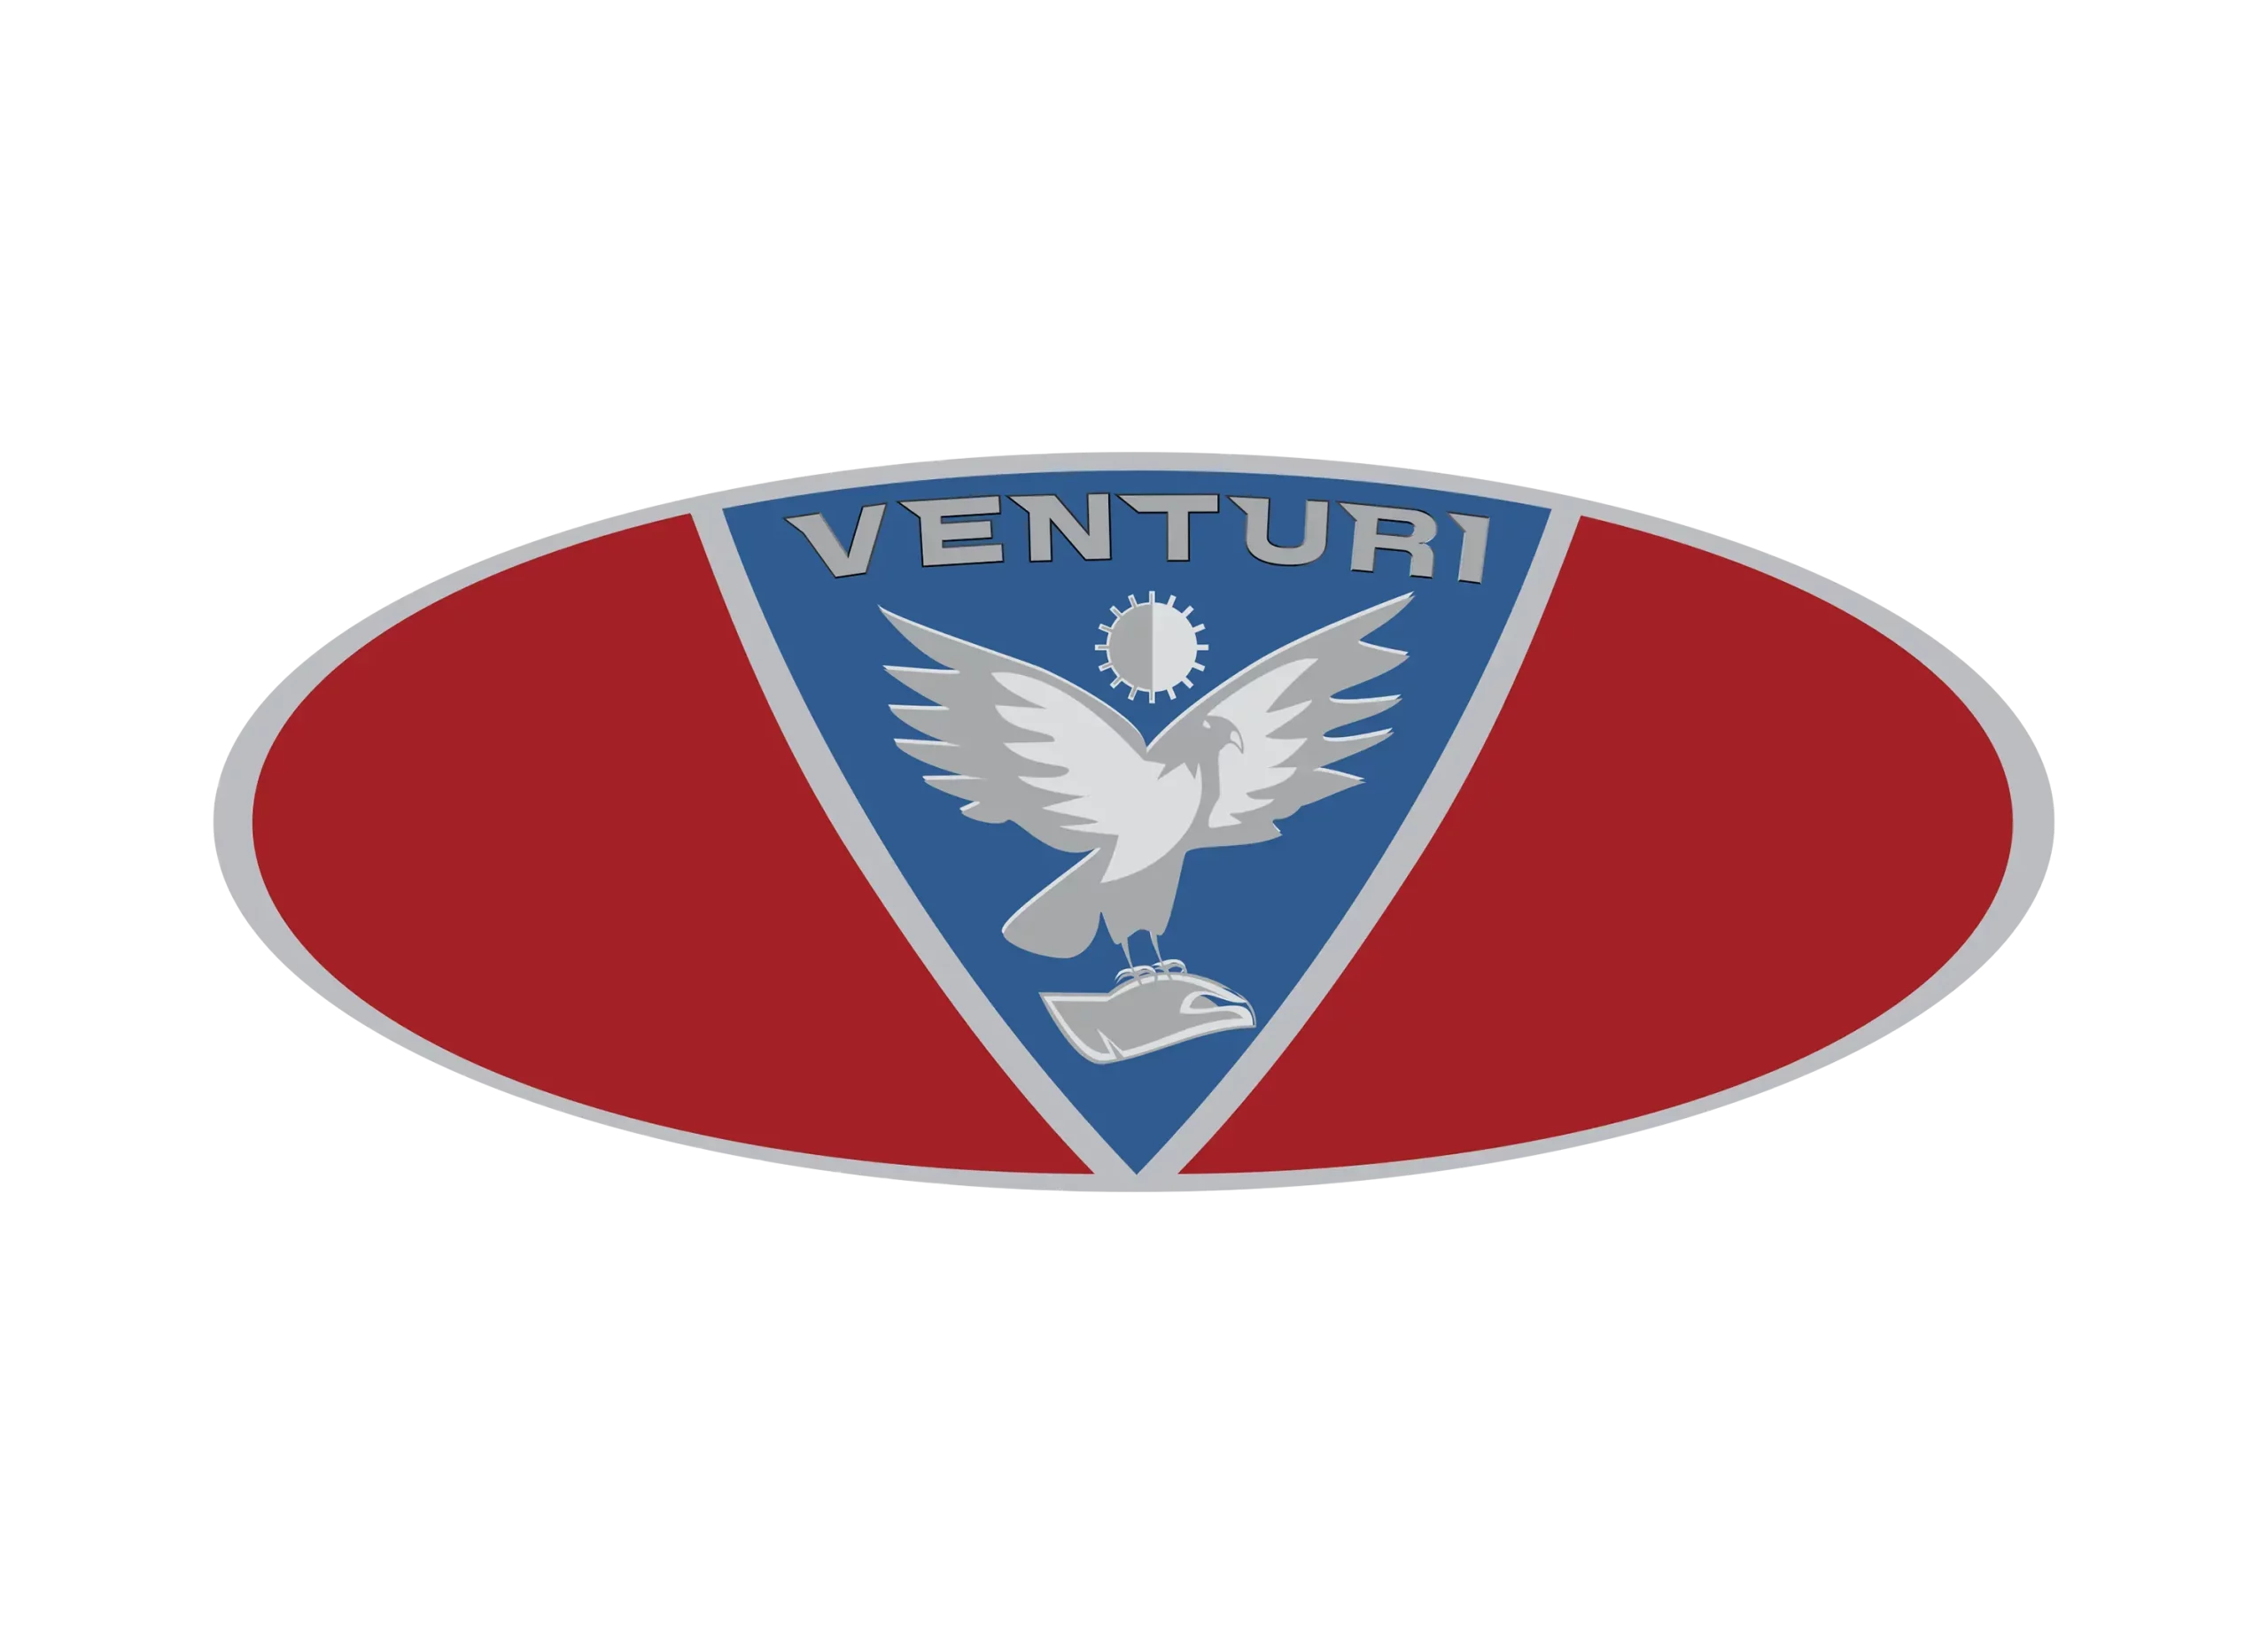 Venturi logo 2001-2013